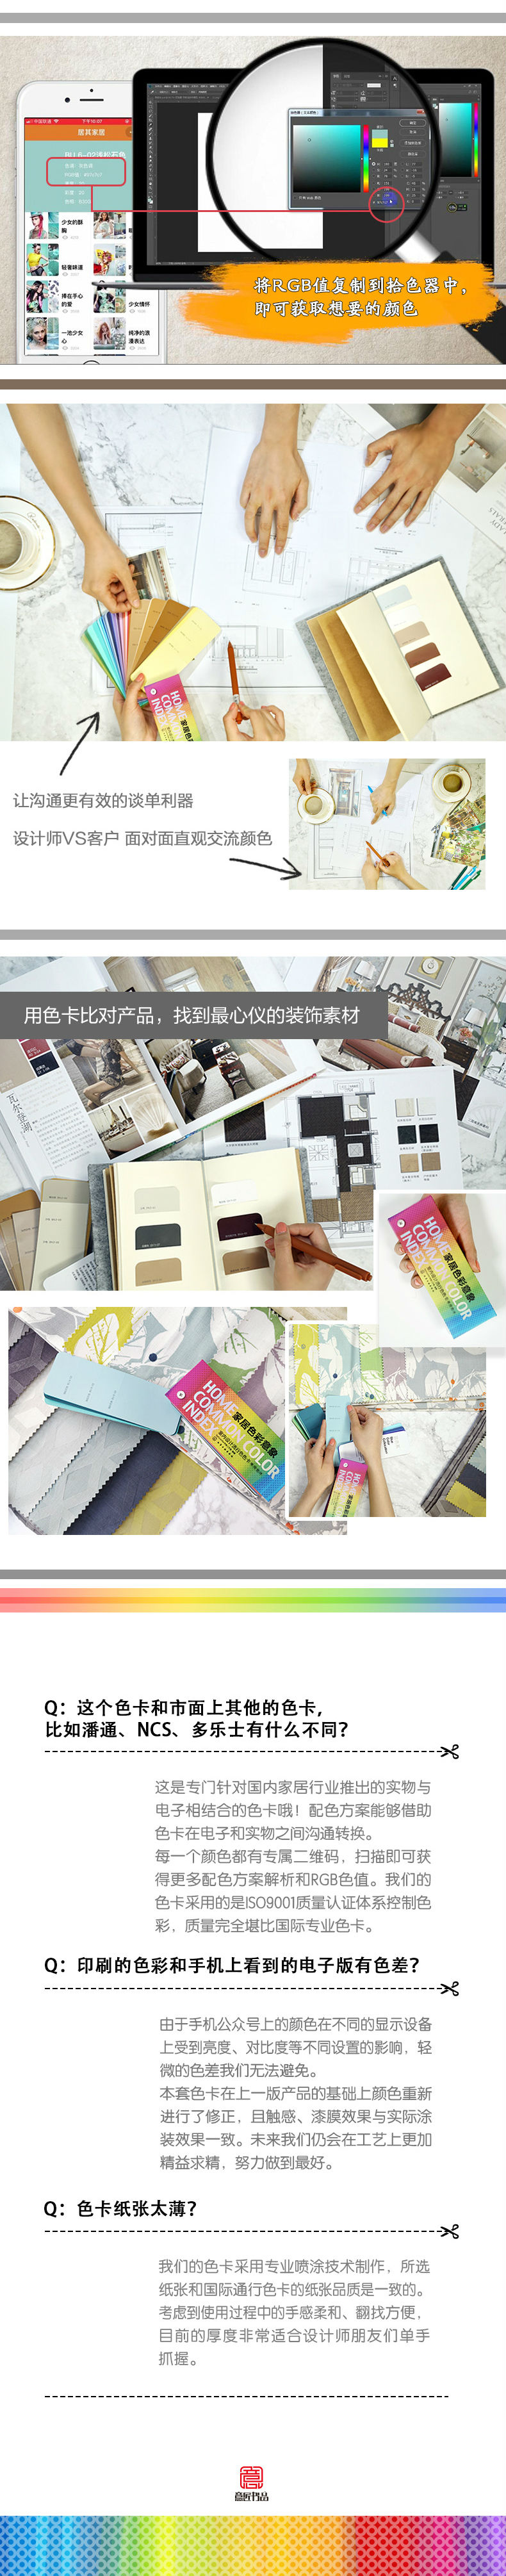 家居色彩意象 室内设计流行色色卡 常用色170 Beforeafter色咖工作室 摘要书评试读 京东图书